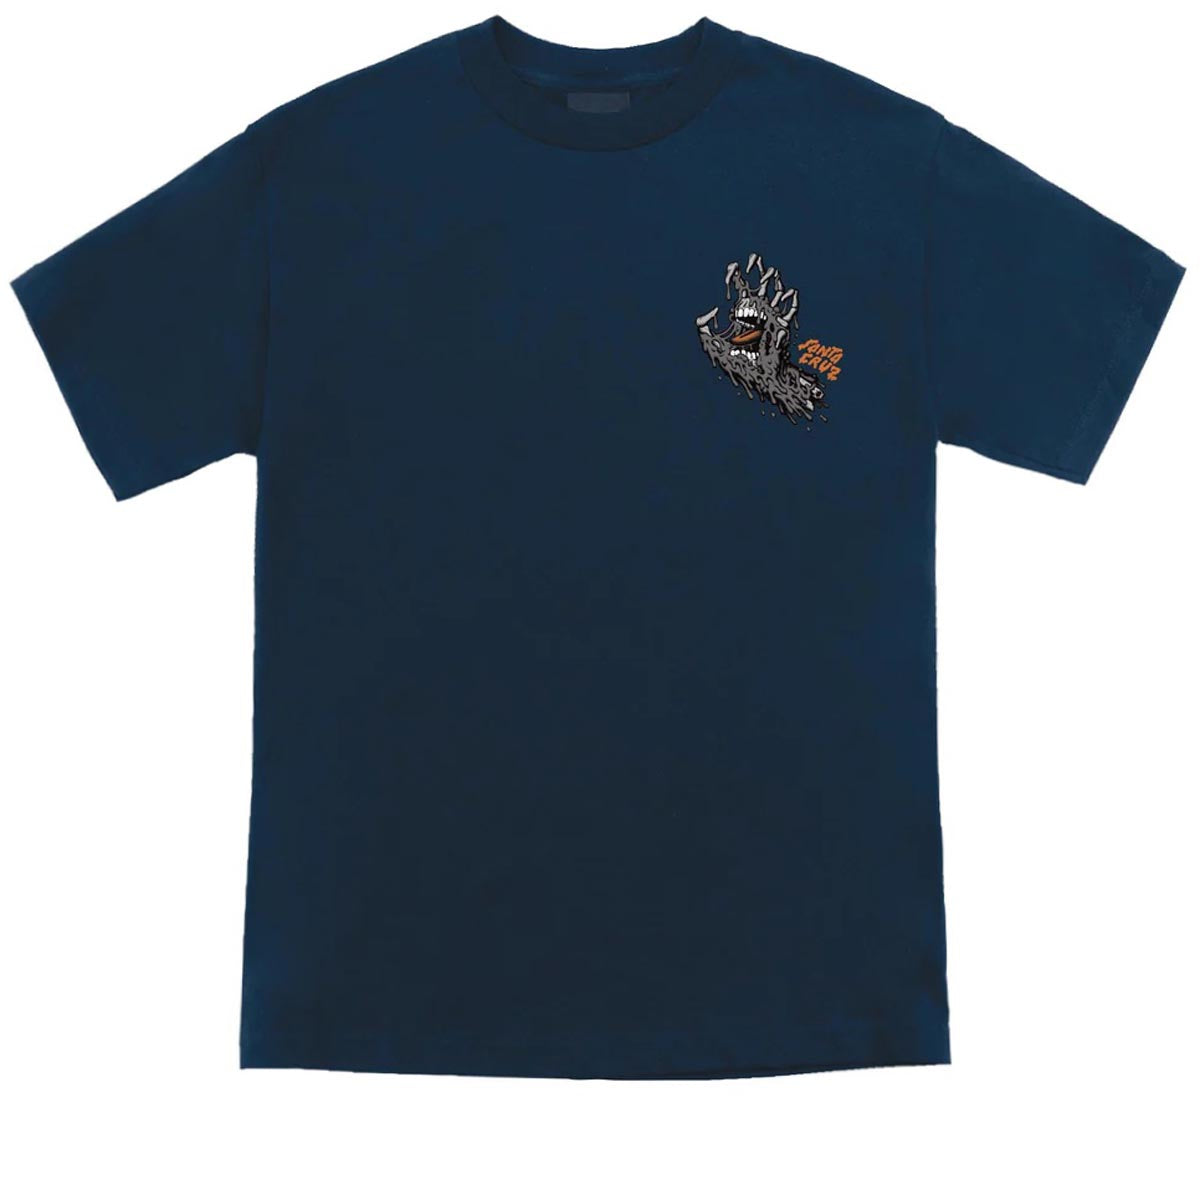 Santa Cruz Melting Hand Premium T-Shirt - Eco Navy image 2